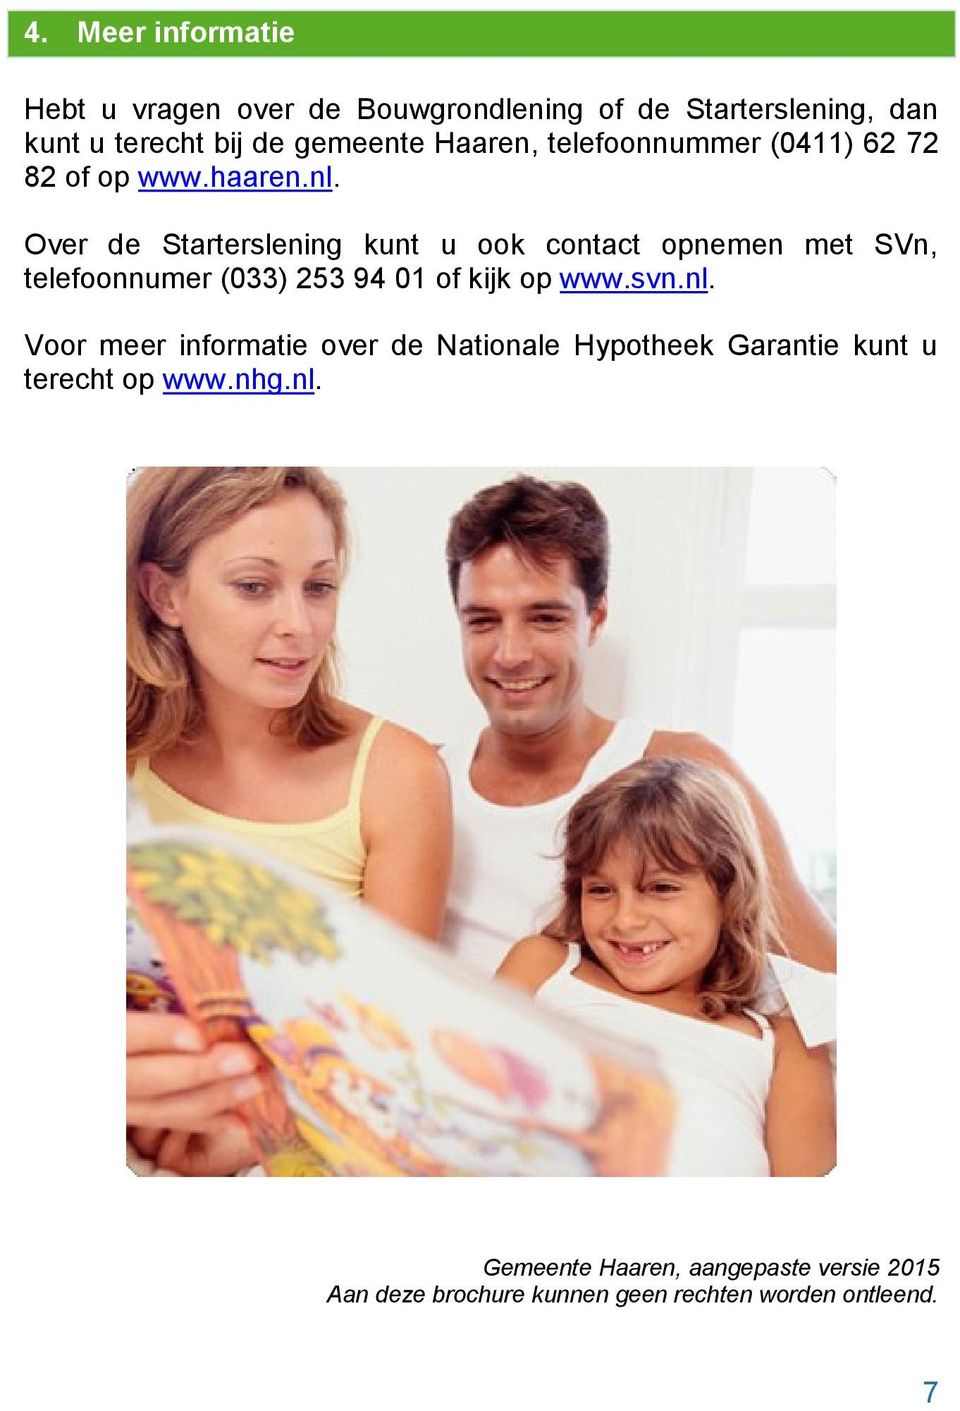 Over de Starterslening kunt u ook contact opnemen met SVn, telefoonnumer (033) 253 94 01 of kijk op www.svn.nl.